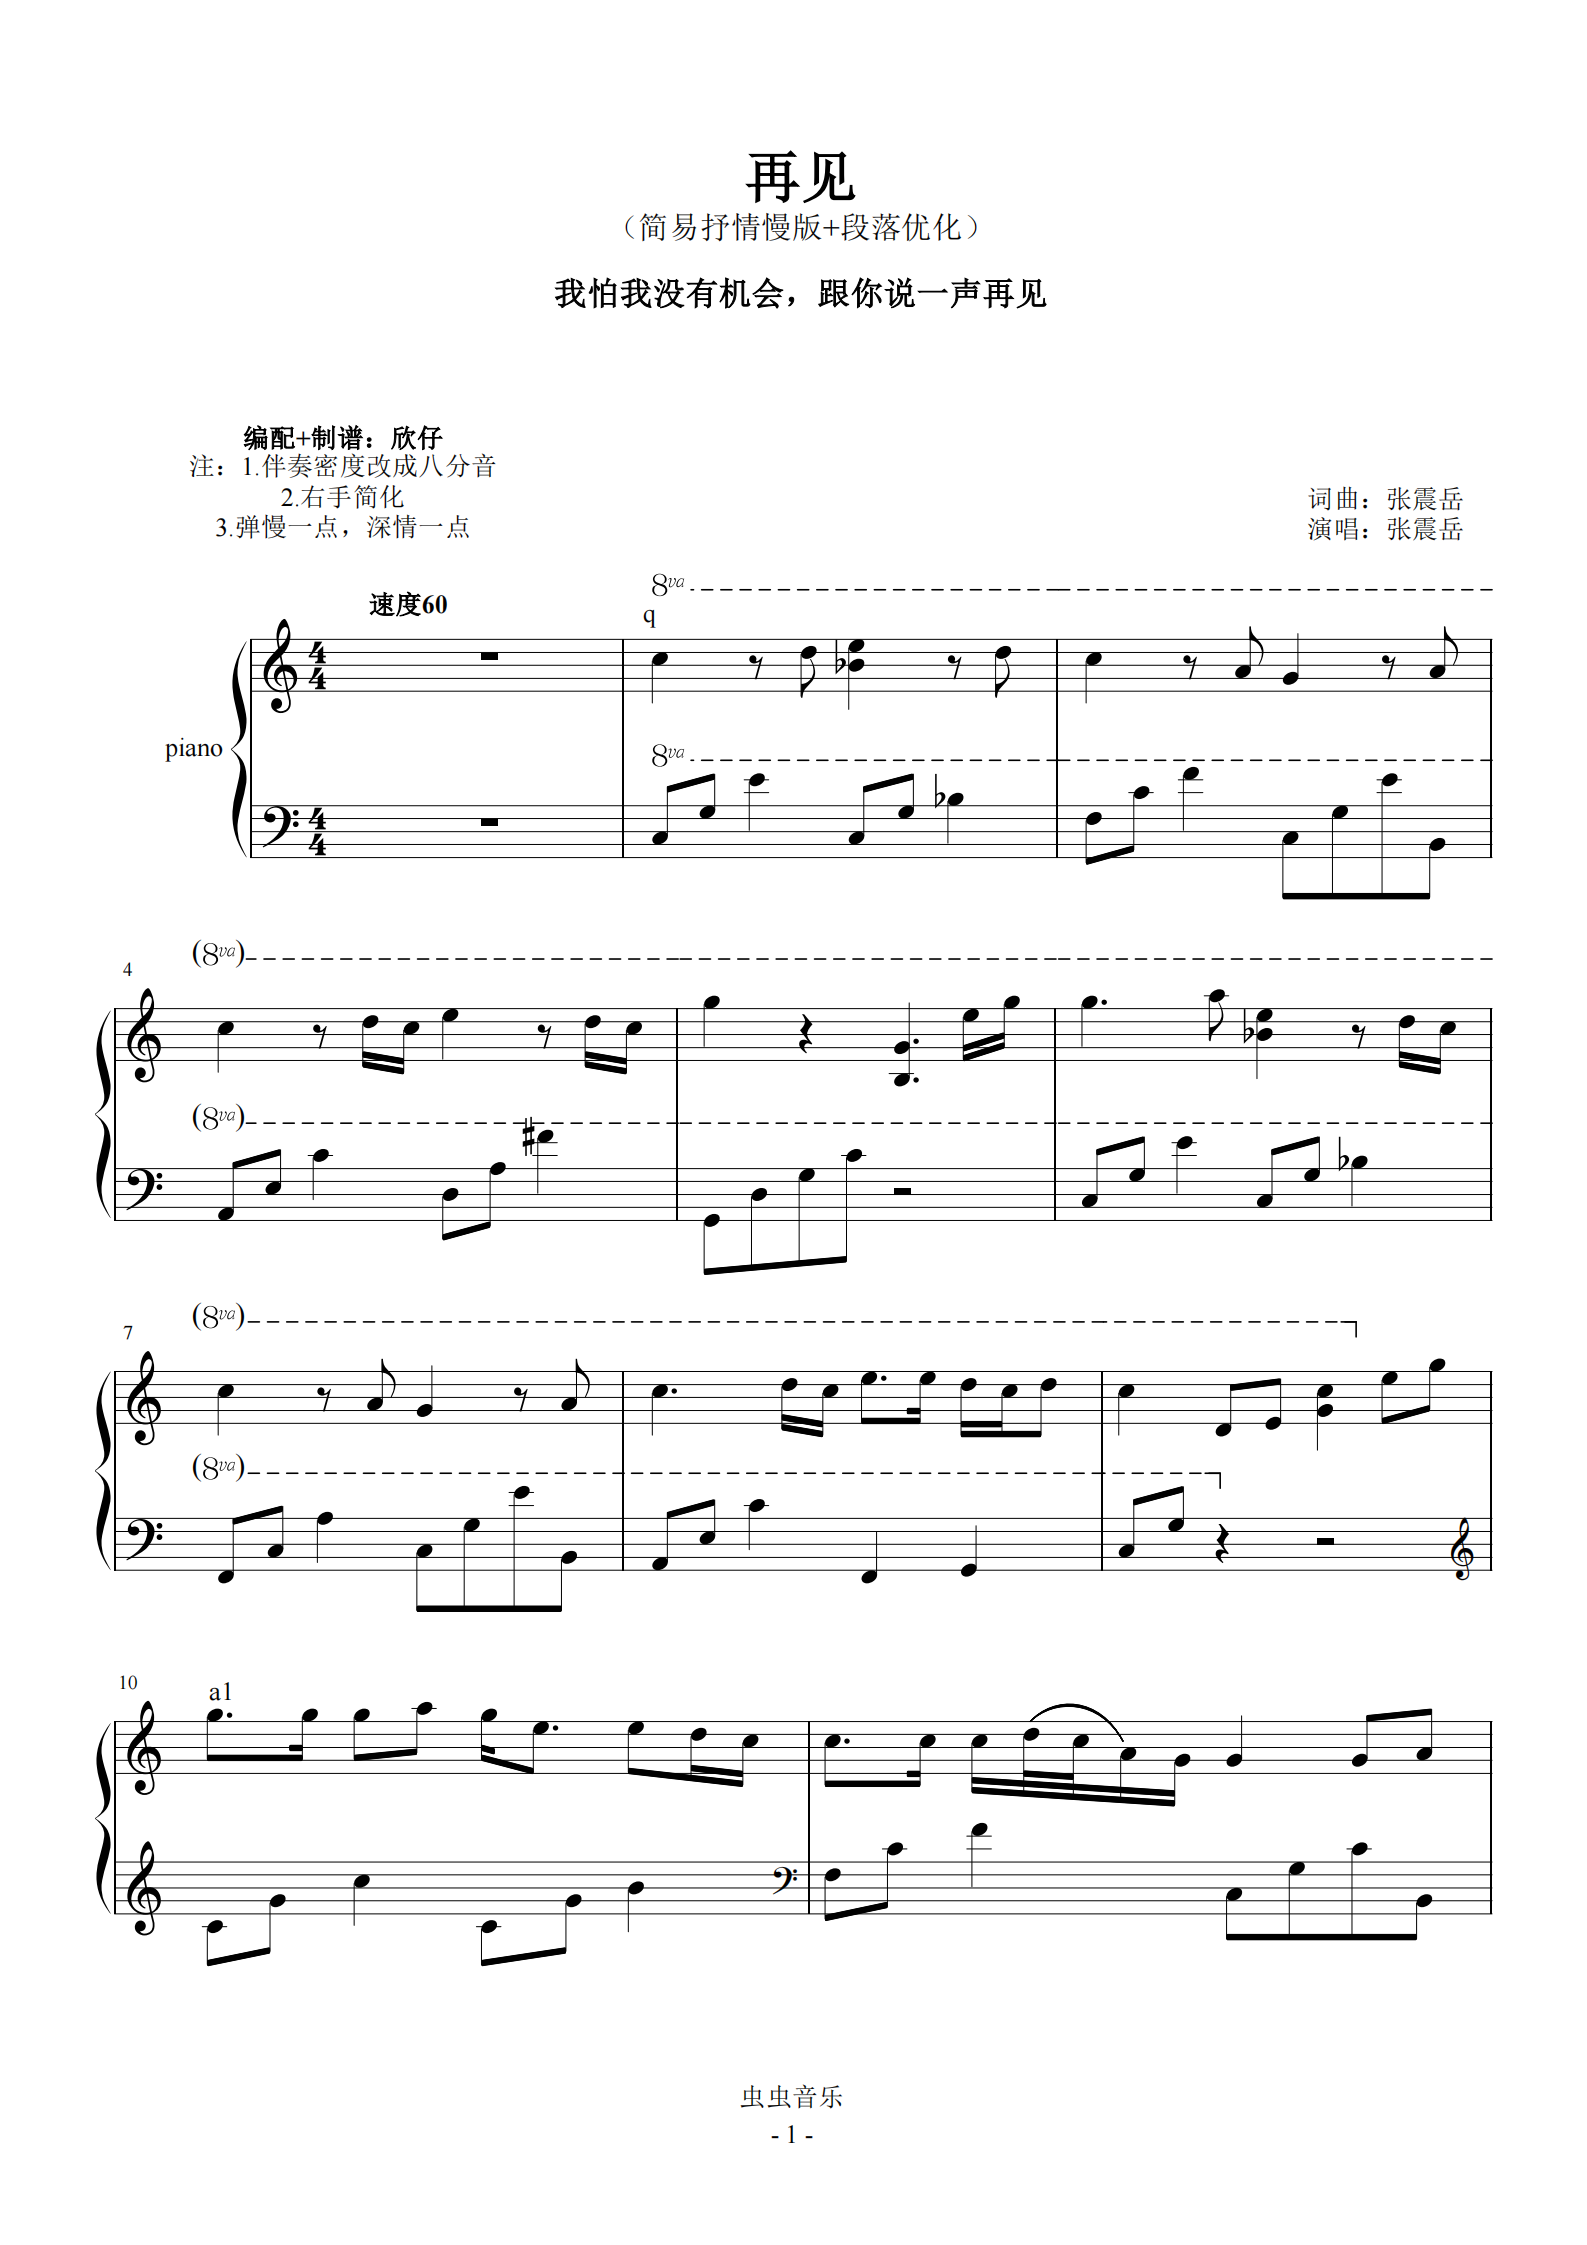 首页 钢琴谱库 张震岳-c《再见》(简易抒情版 段落优化)